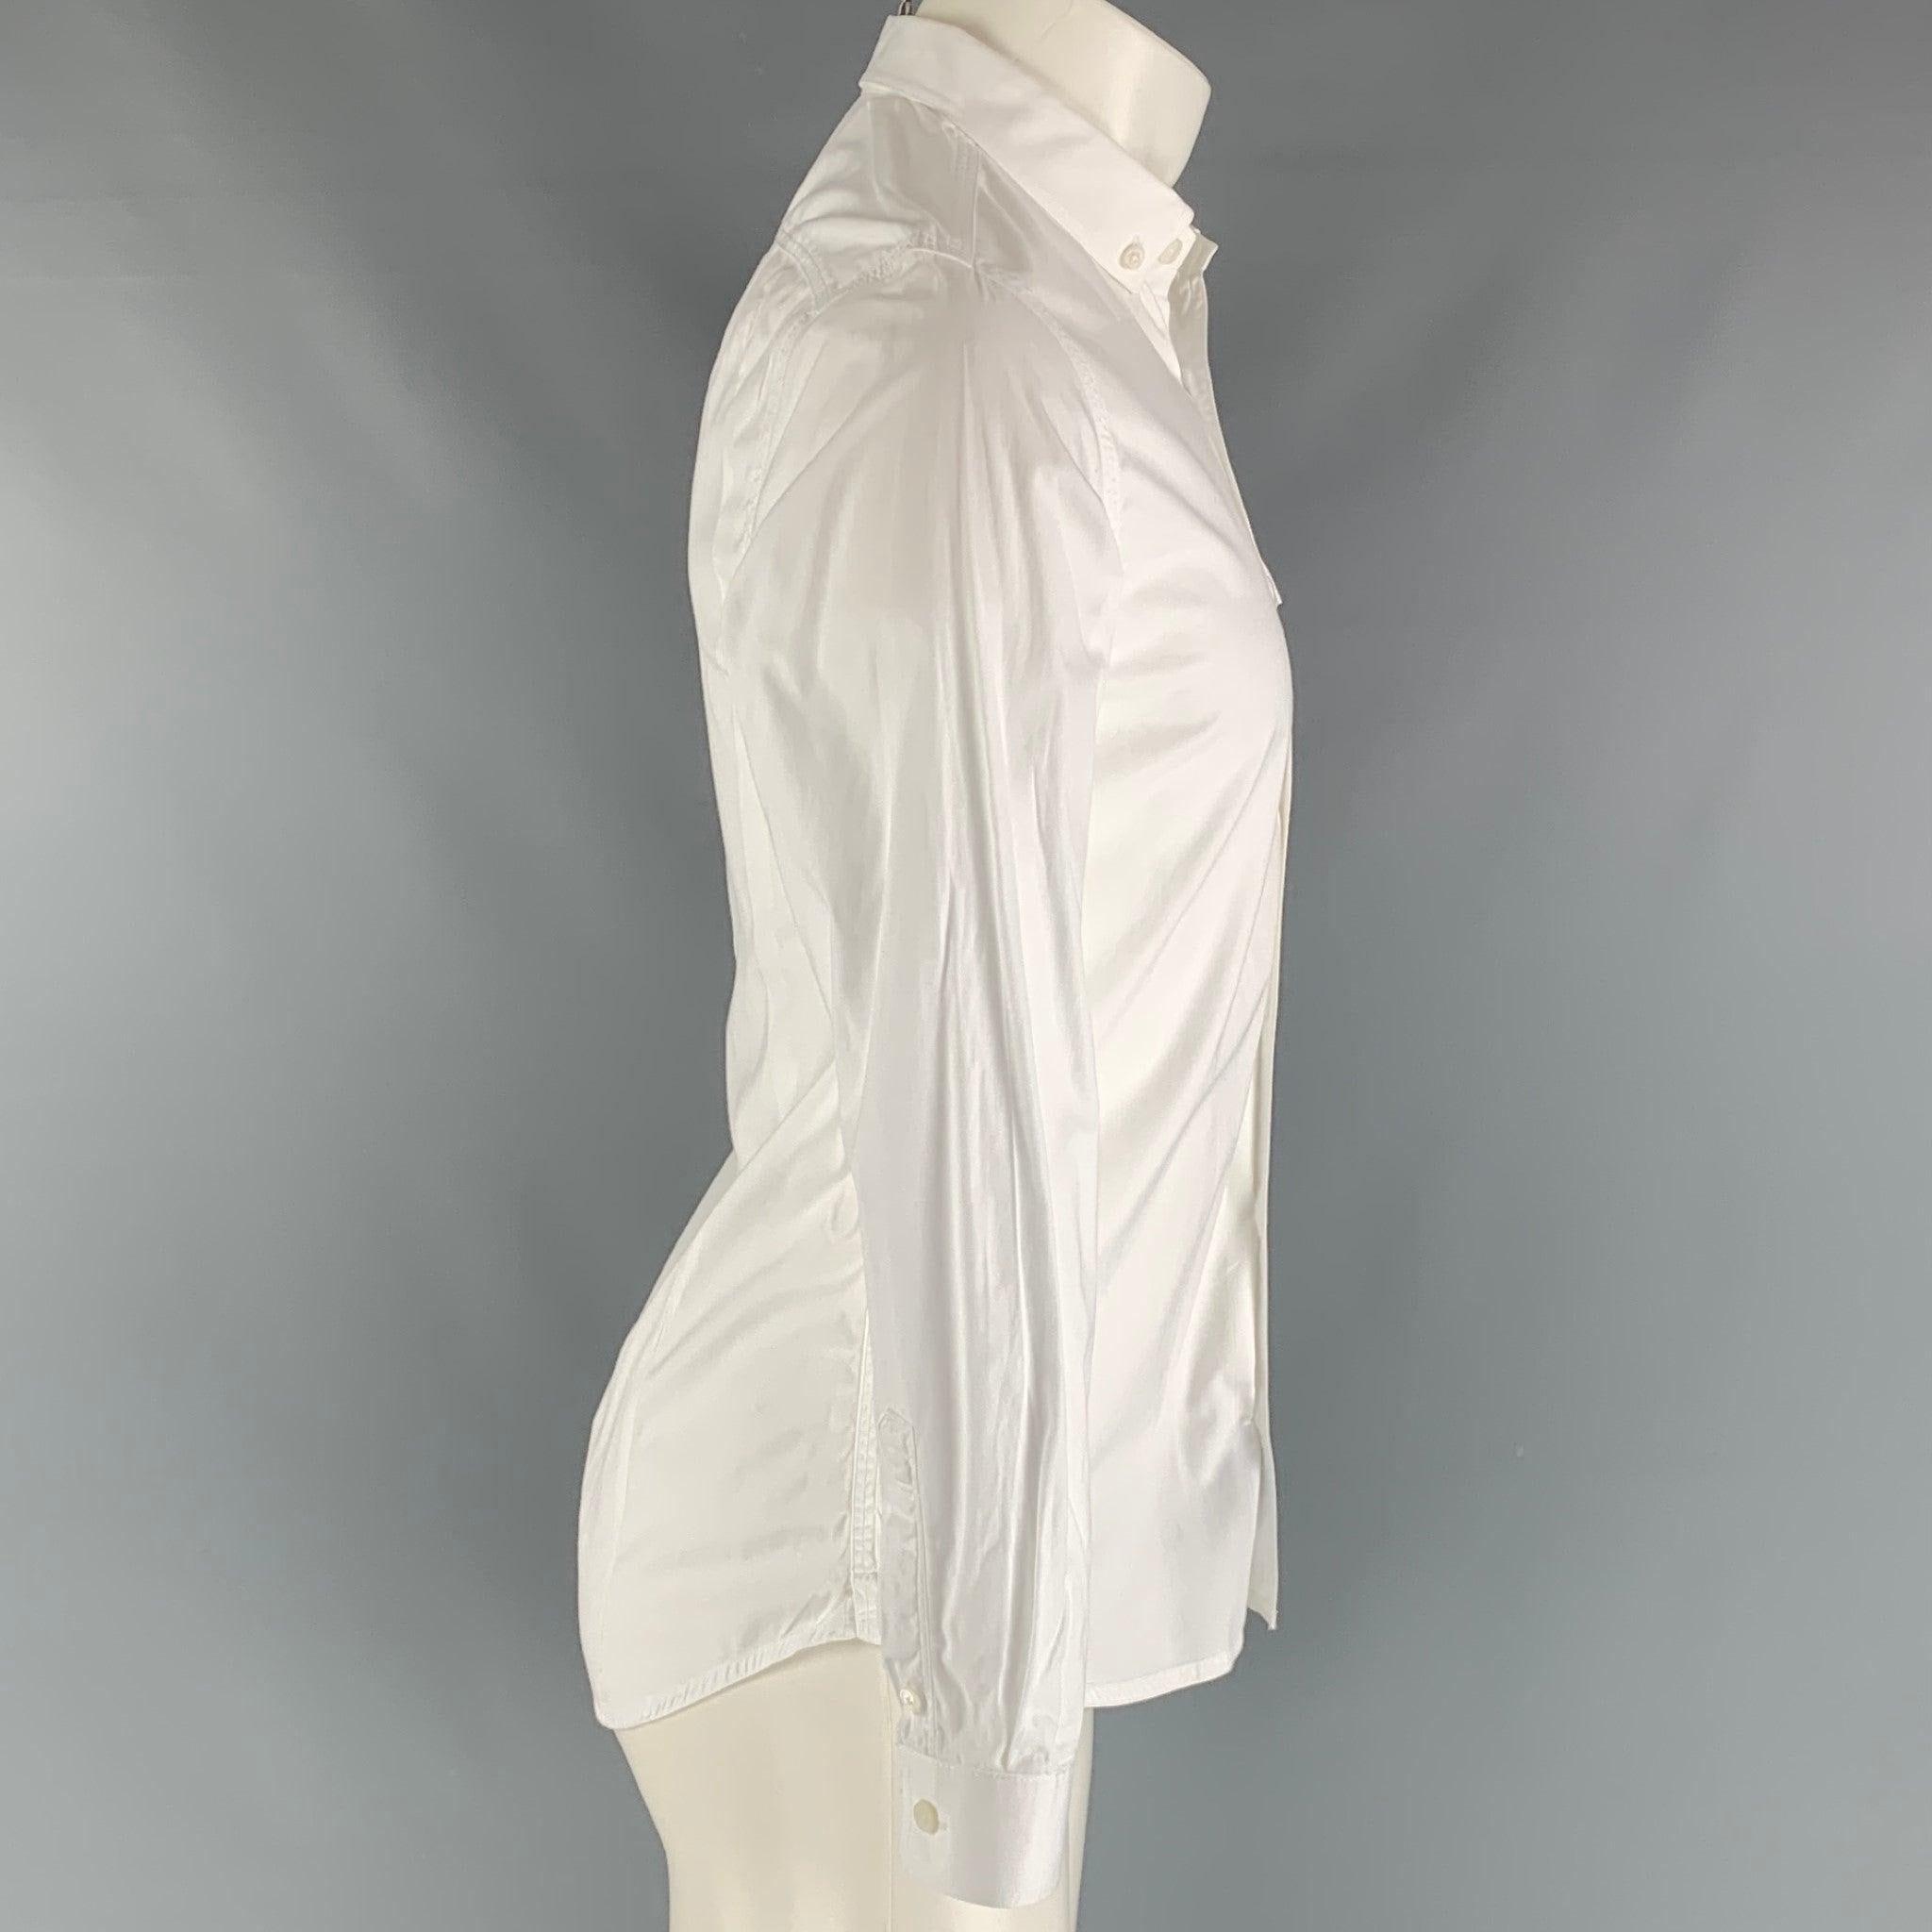 La chemise à manches longues PRORSUM de Burberry est en coton blanc et présente un col boutonné, une poche frontale plaquée à rabat et une fermeture à boutons. Fabriqué en Italie. Très bon état. Petite marque lavable. 

Marqué :   16- 41 

Mesures :